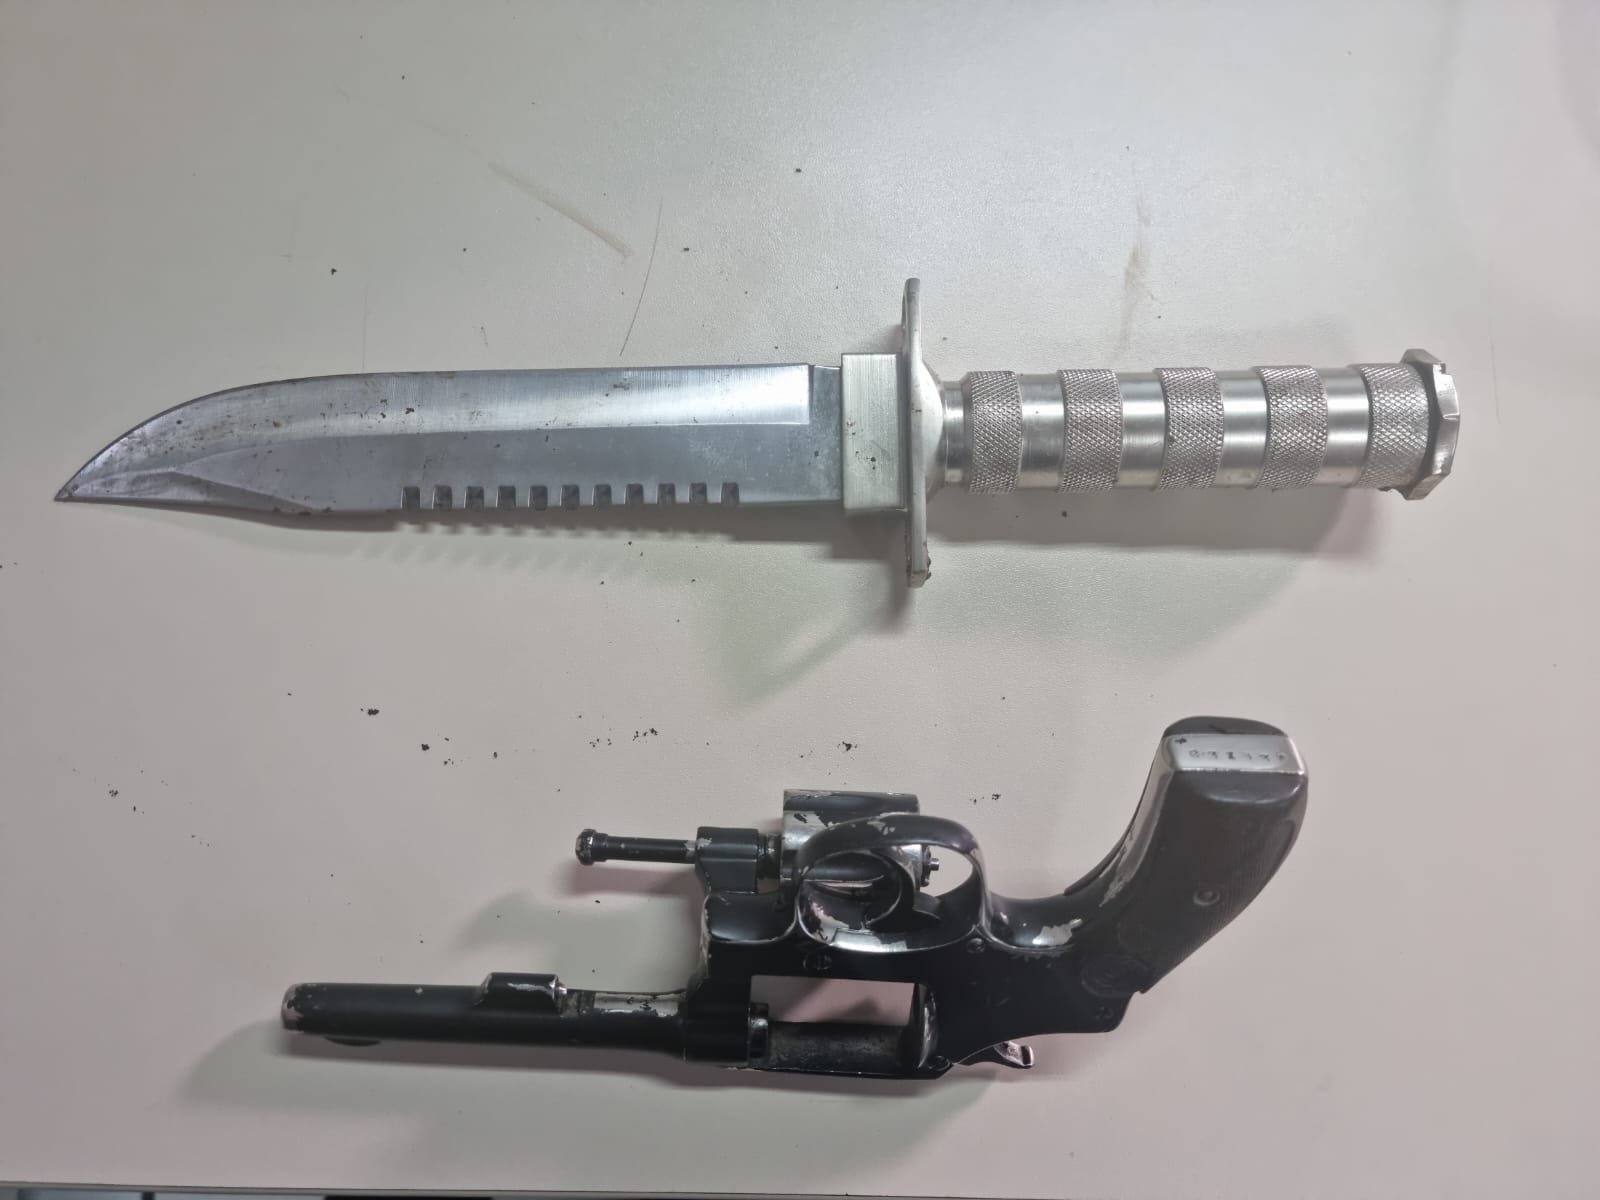 Revólver e faca utilizadas no crime em Teresópolis (RJ)